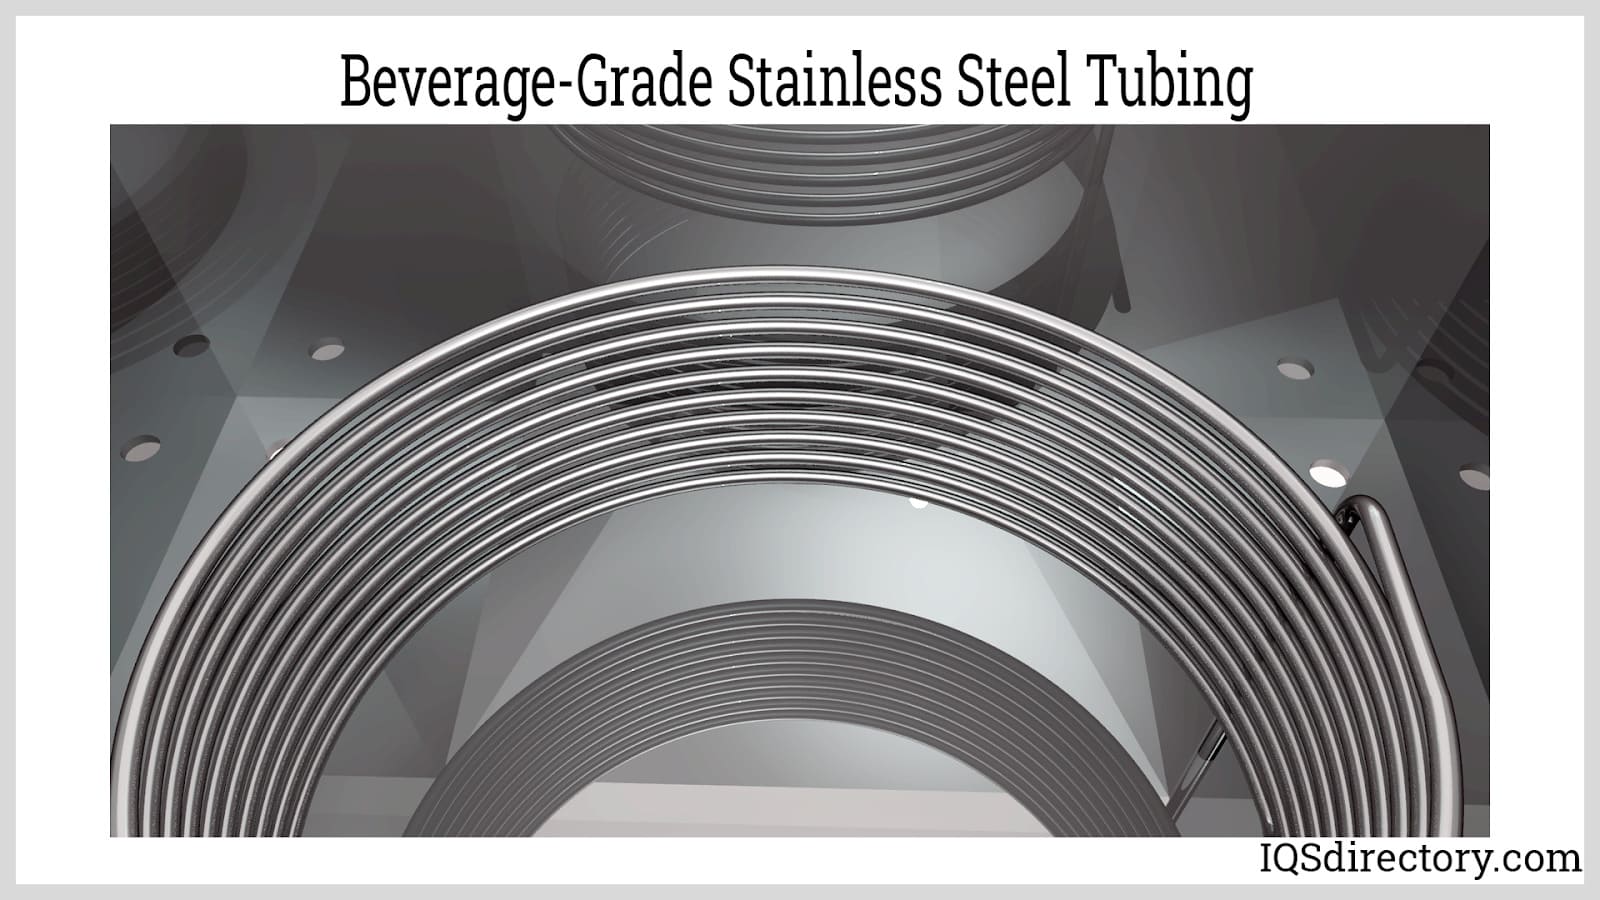 Beverage-Grade Stainless Steel Tubing